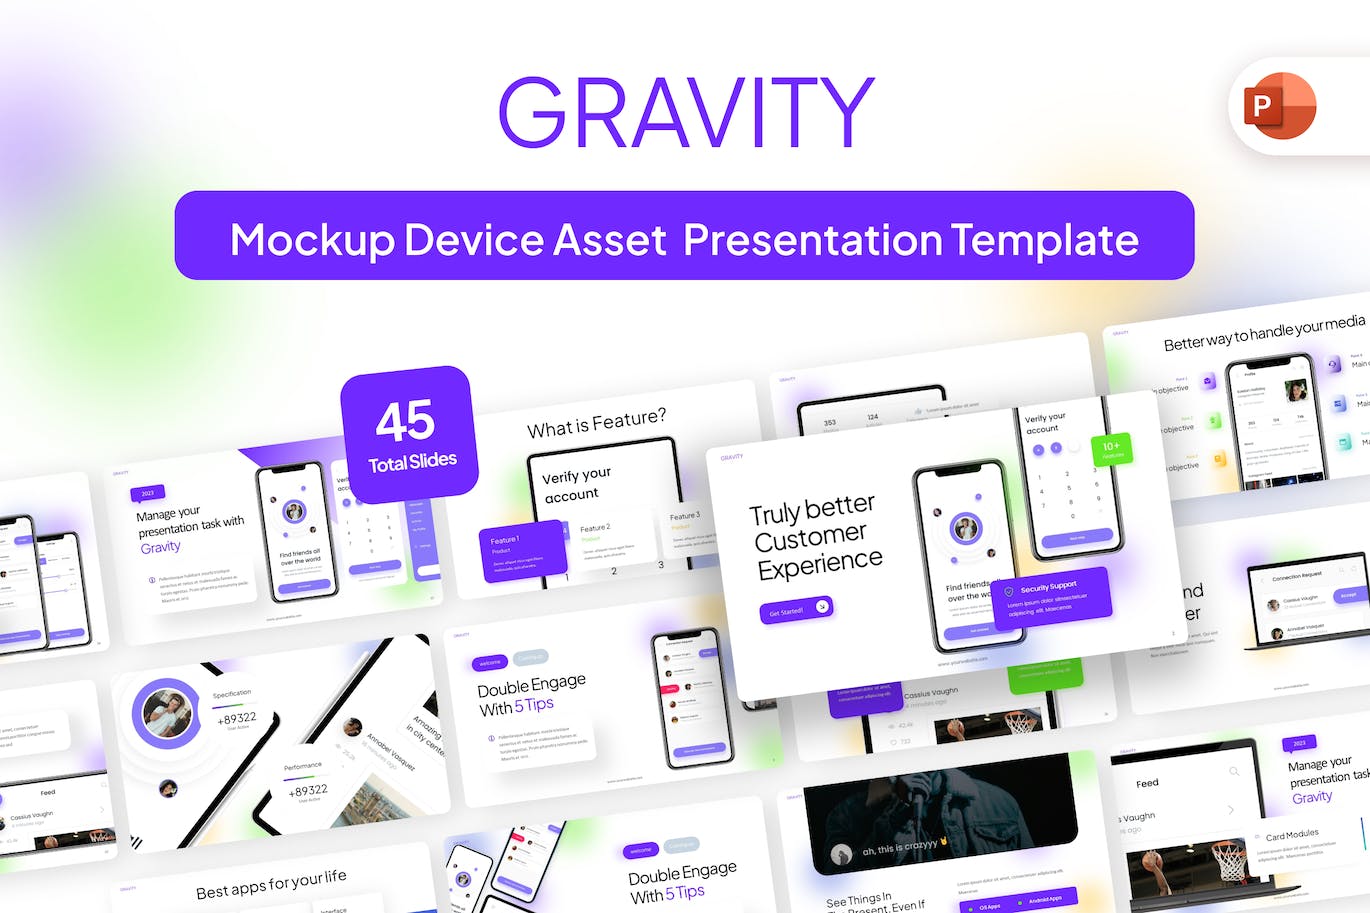 电子设备样机幻灯片演示PPT模板 Gravity Mockup Device Asset PowerPoint Template 幻灯图表 第1张